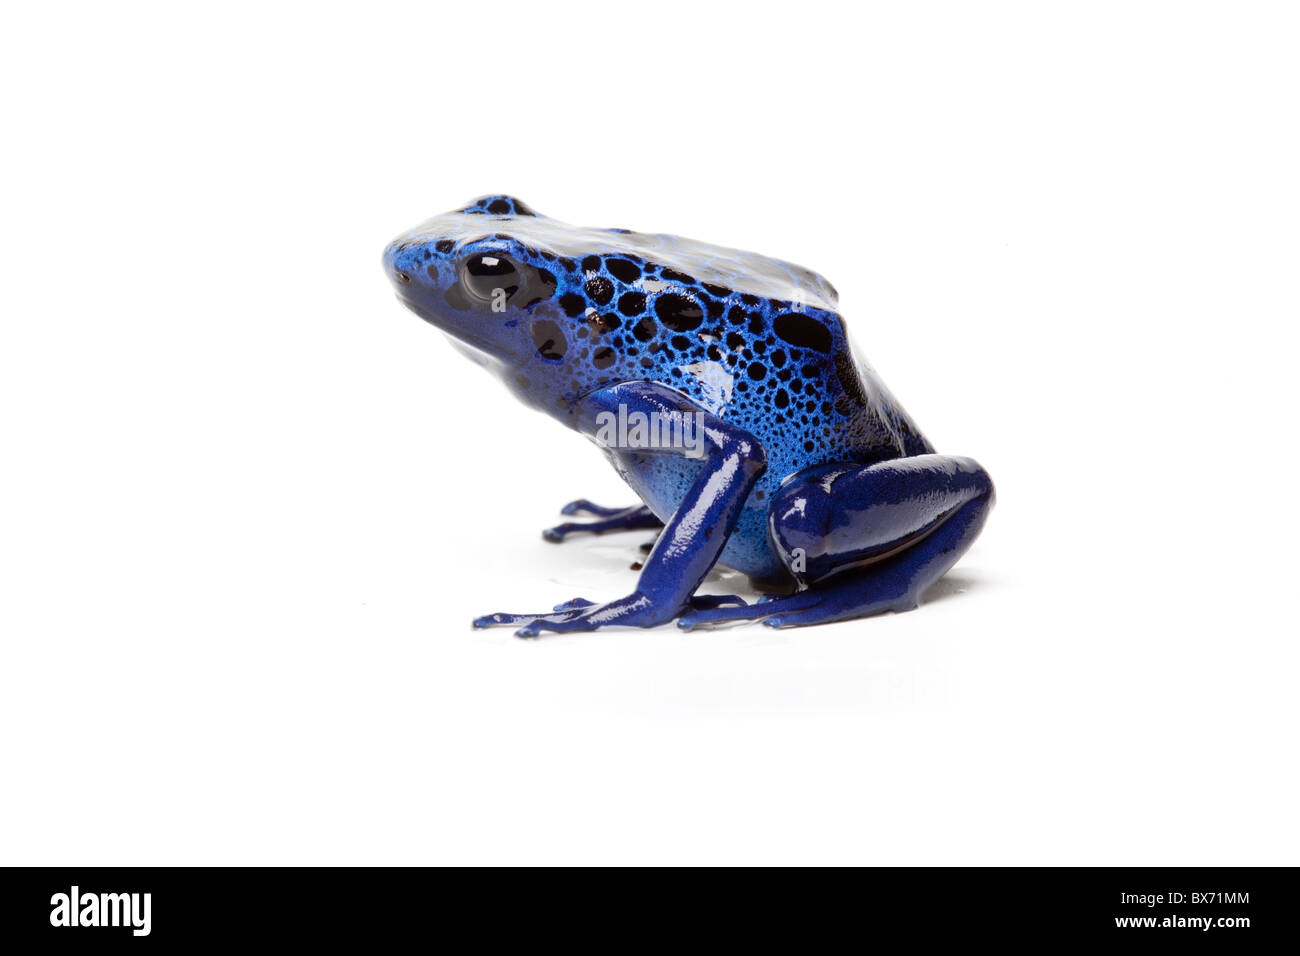 Blue Poison Dart Frog, Dendrobates tinctorius azureus Banque D'Images